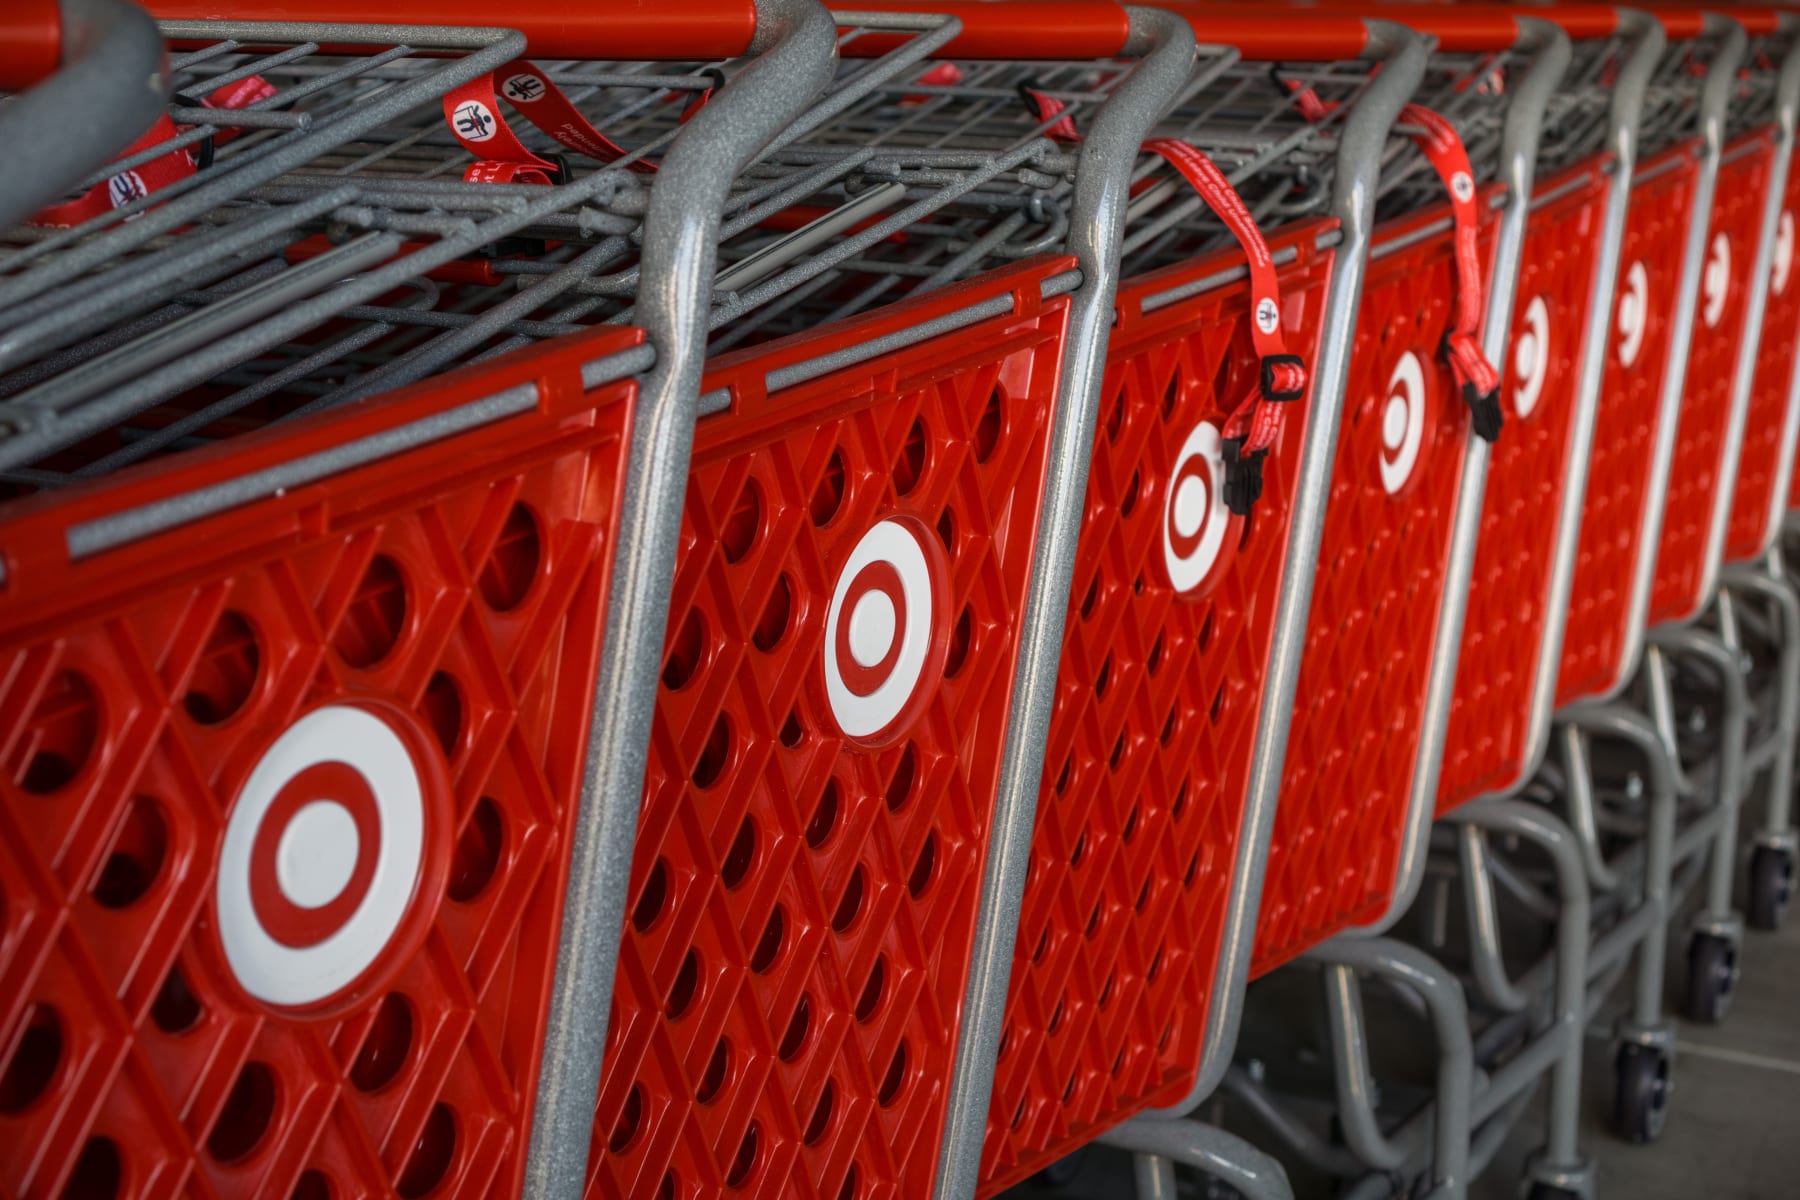 Target carts